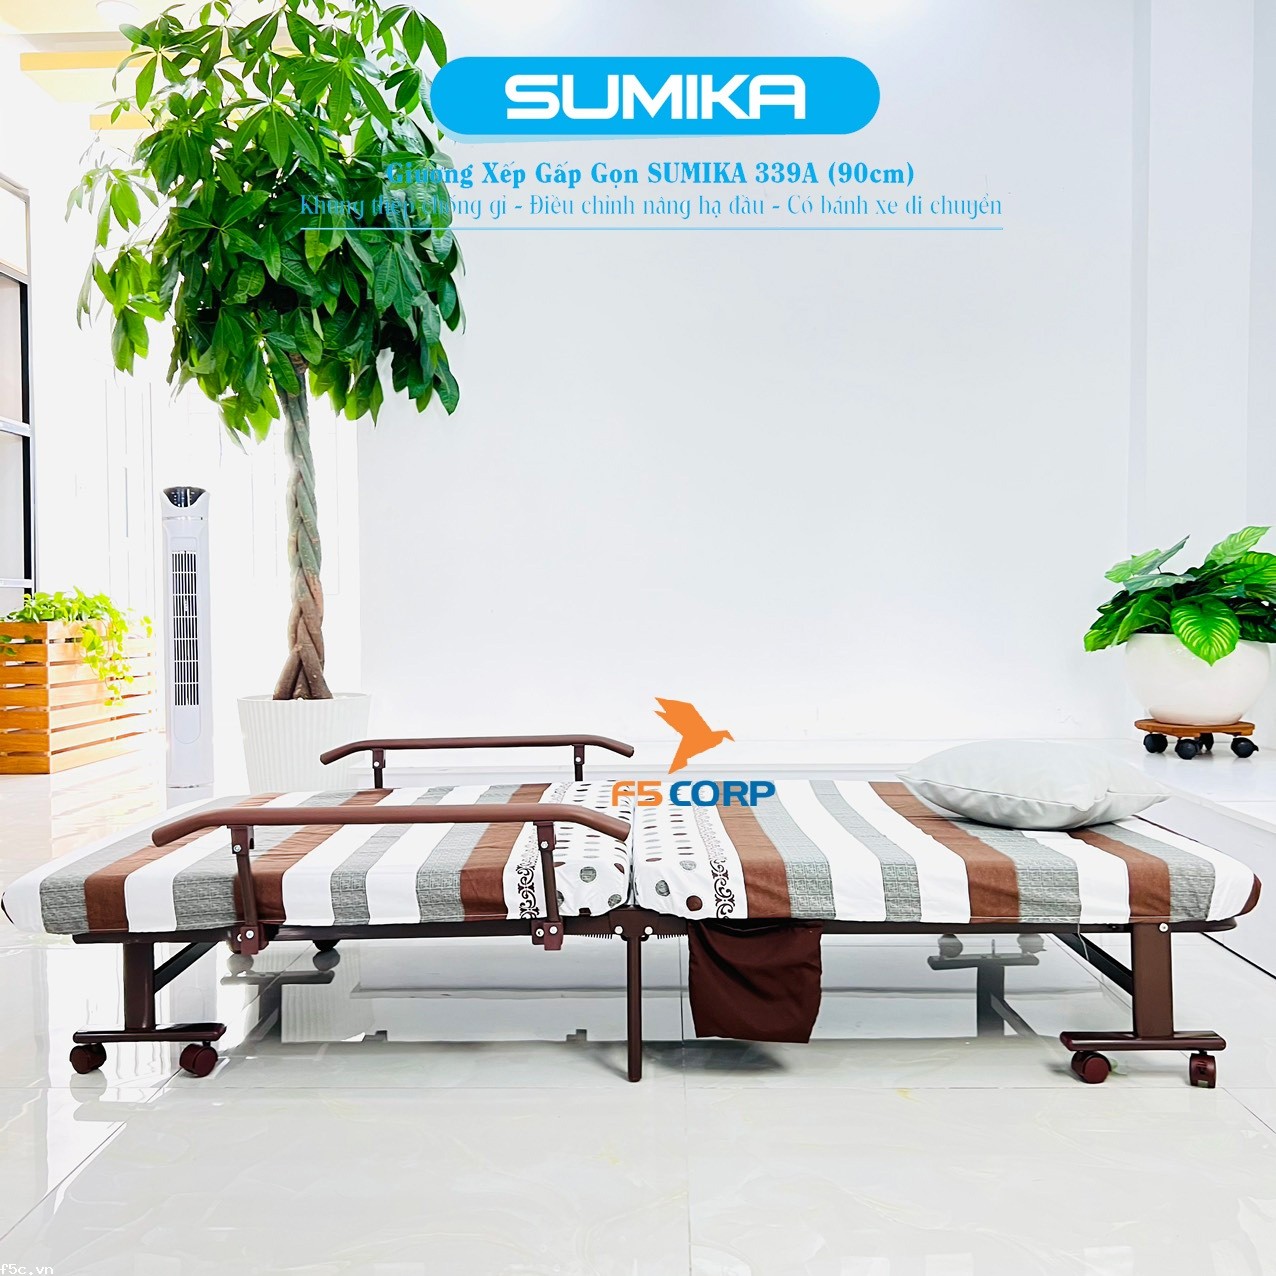 Giường nệm xếp gọn đa năng kiểu dáng Hàn Quốc SUMIKA 339A, rộng 90cm